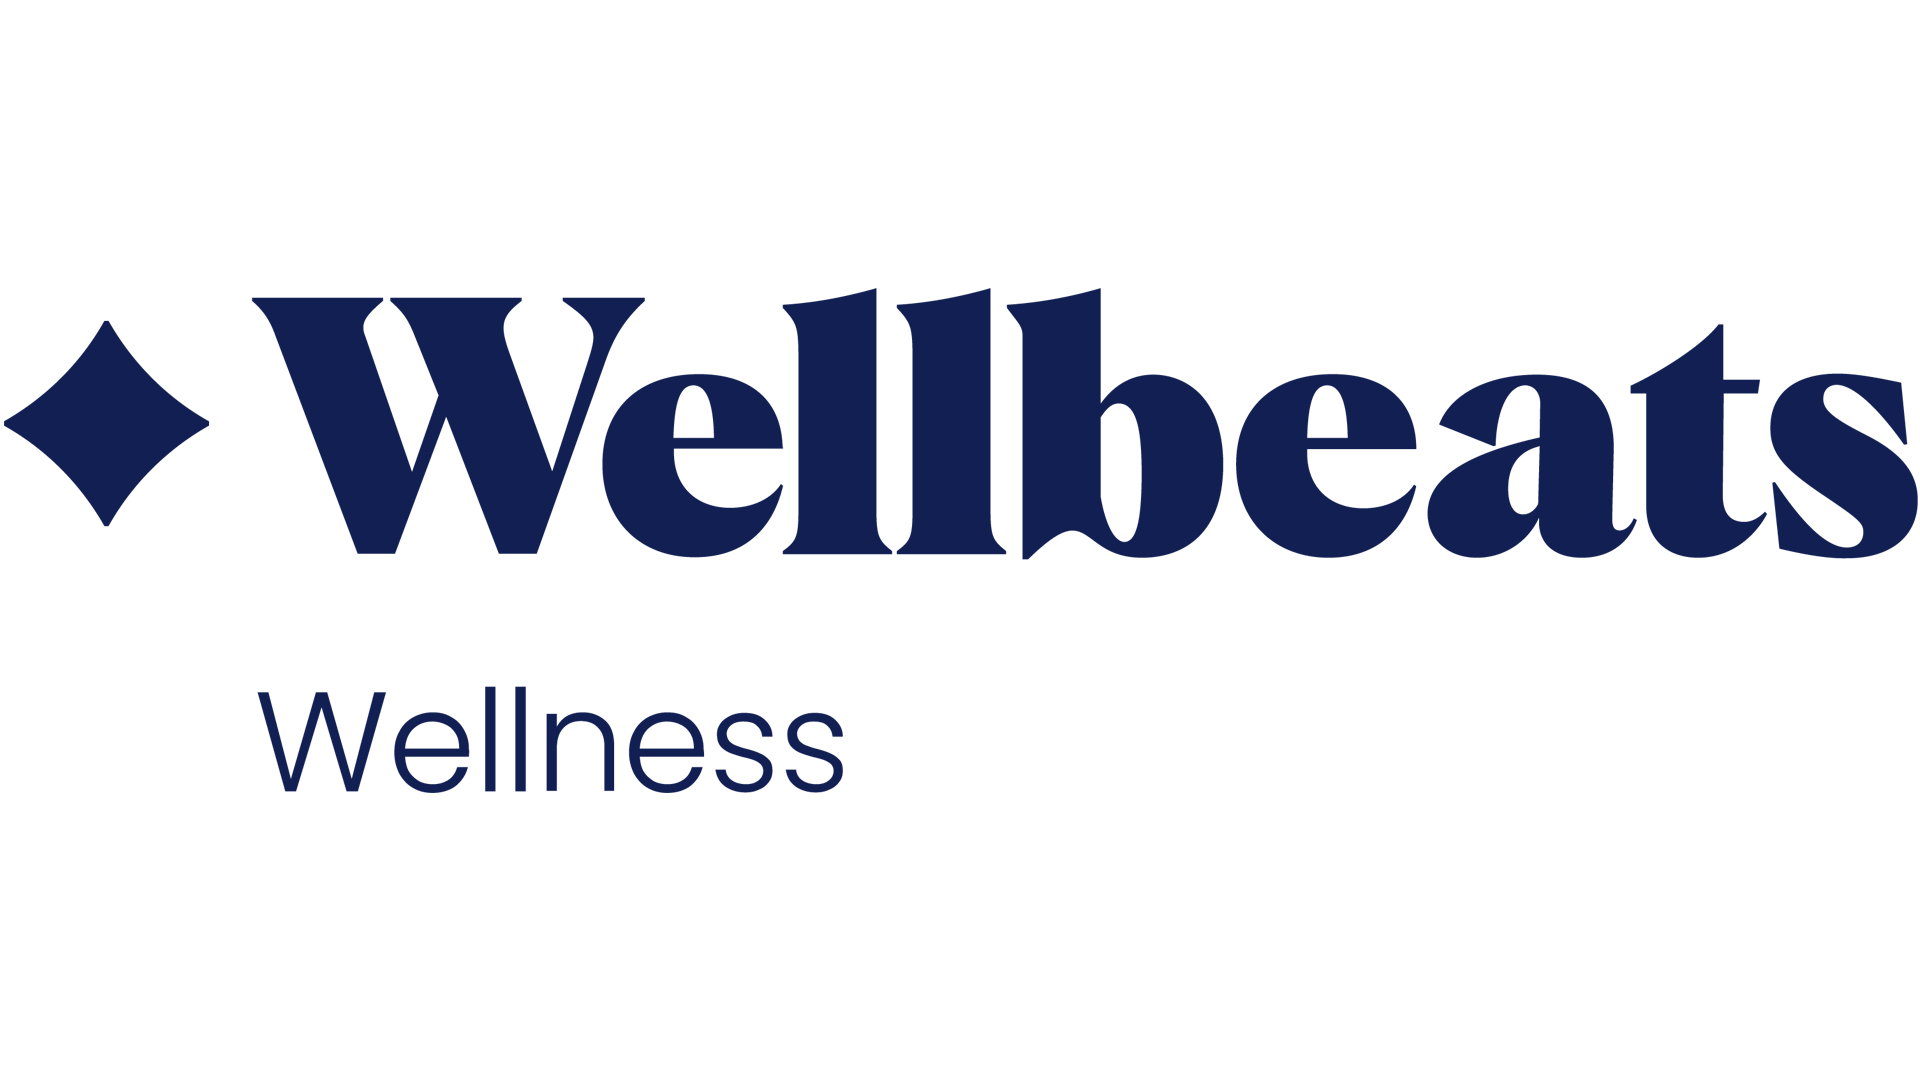 Wellbeats